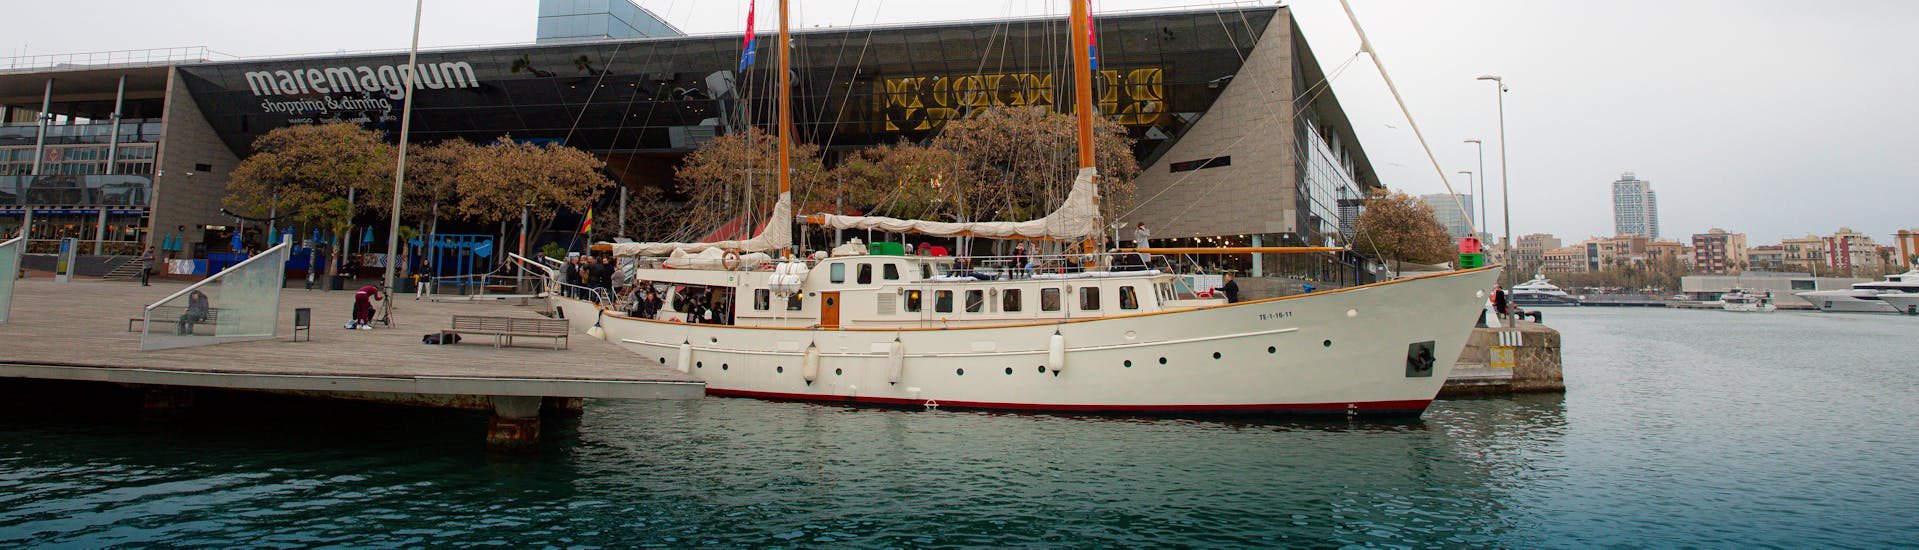 Historisches Boot aus den 1960er Jahren, das eine Bootsfahrt für eine Aktivität mit Gotland Charter beginnt.